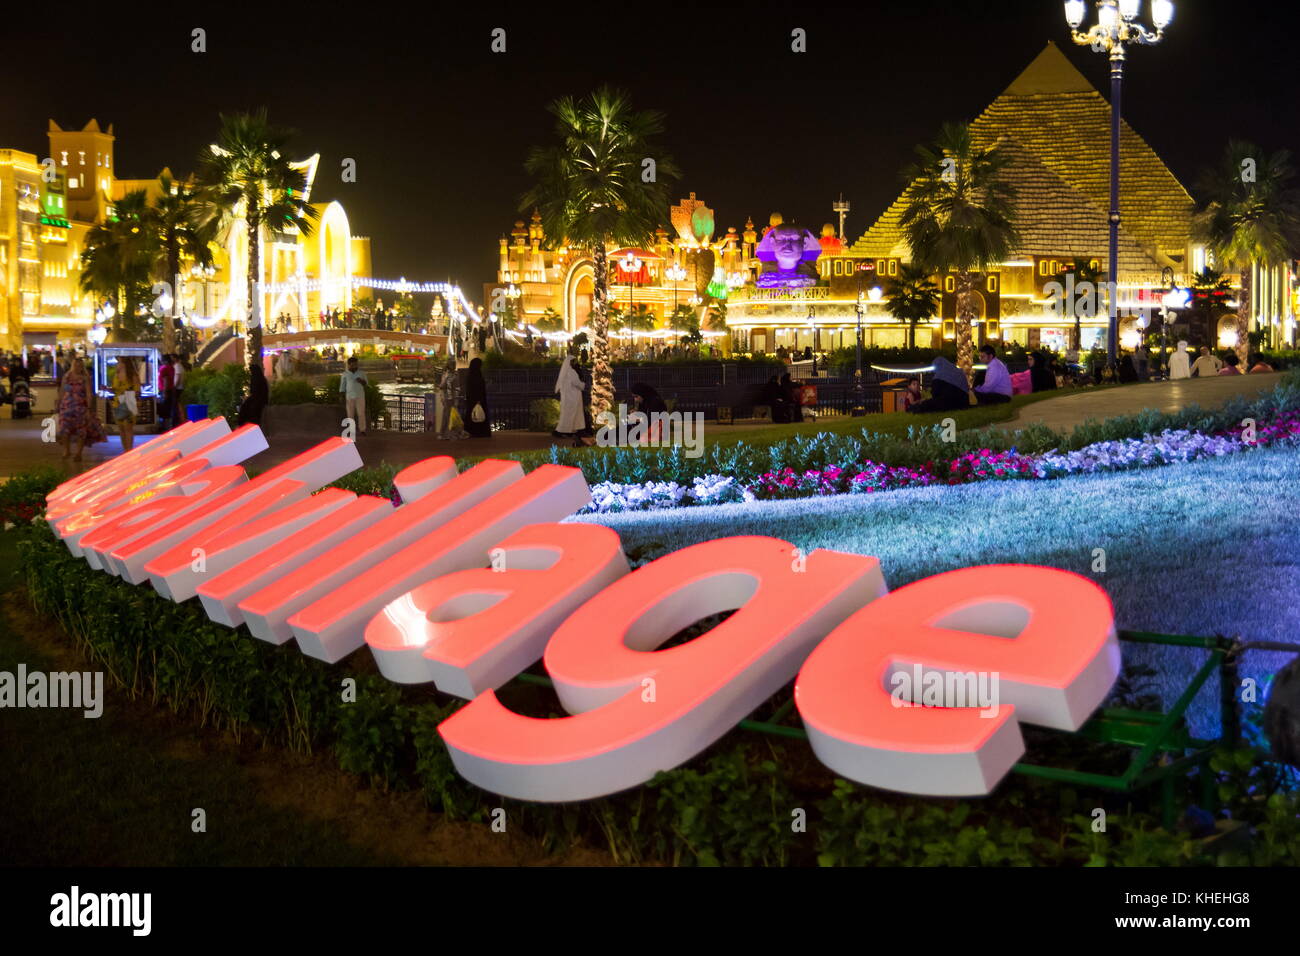 Dubai, Vereinigte Arabische Emirate - November 6, 2017: global village Anmelden bei Nacht. beliebte Touristenattraktion in Dubai mit Geschäften und Restaurants von d Stockfoto